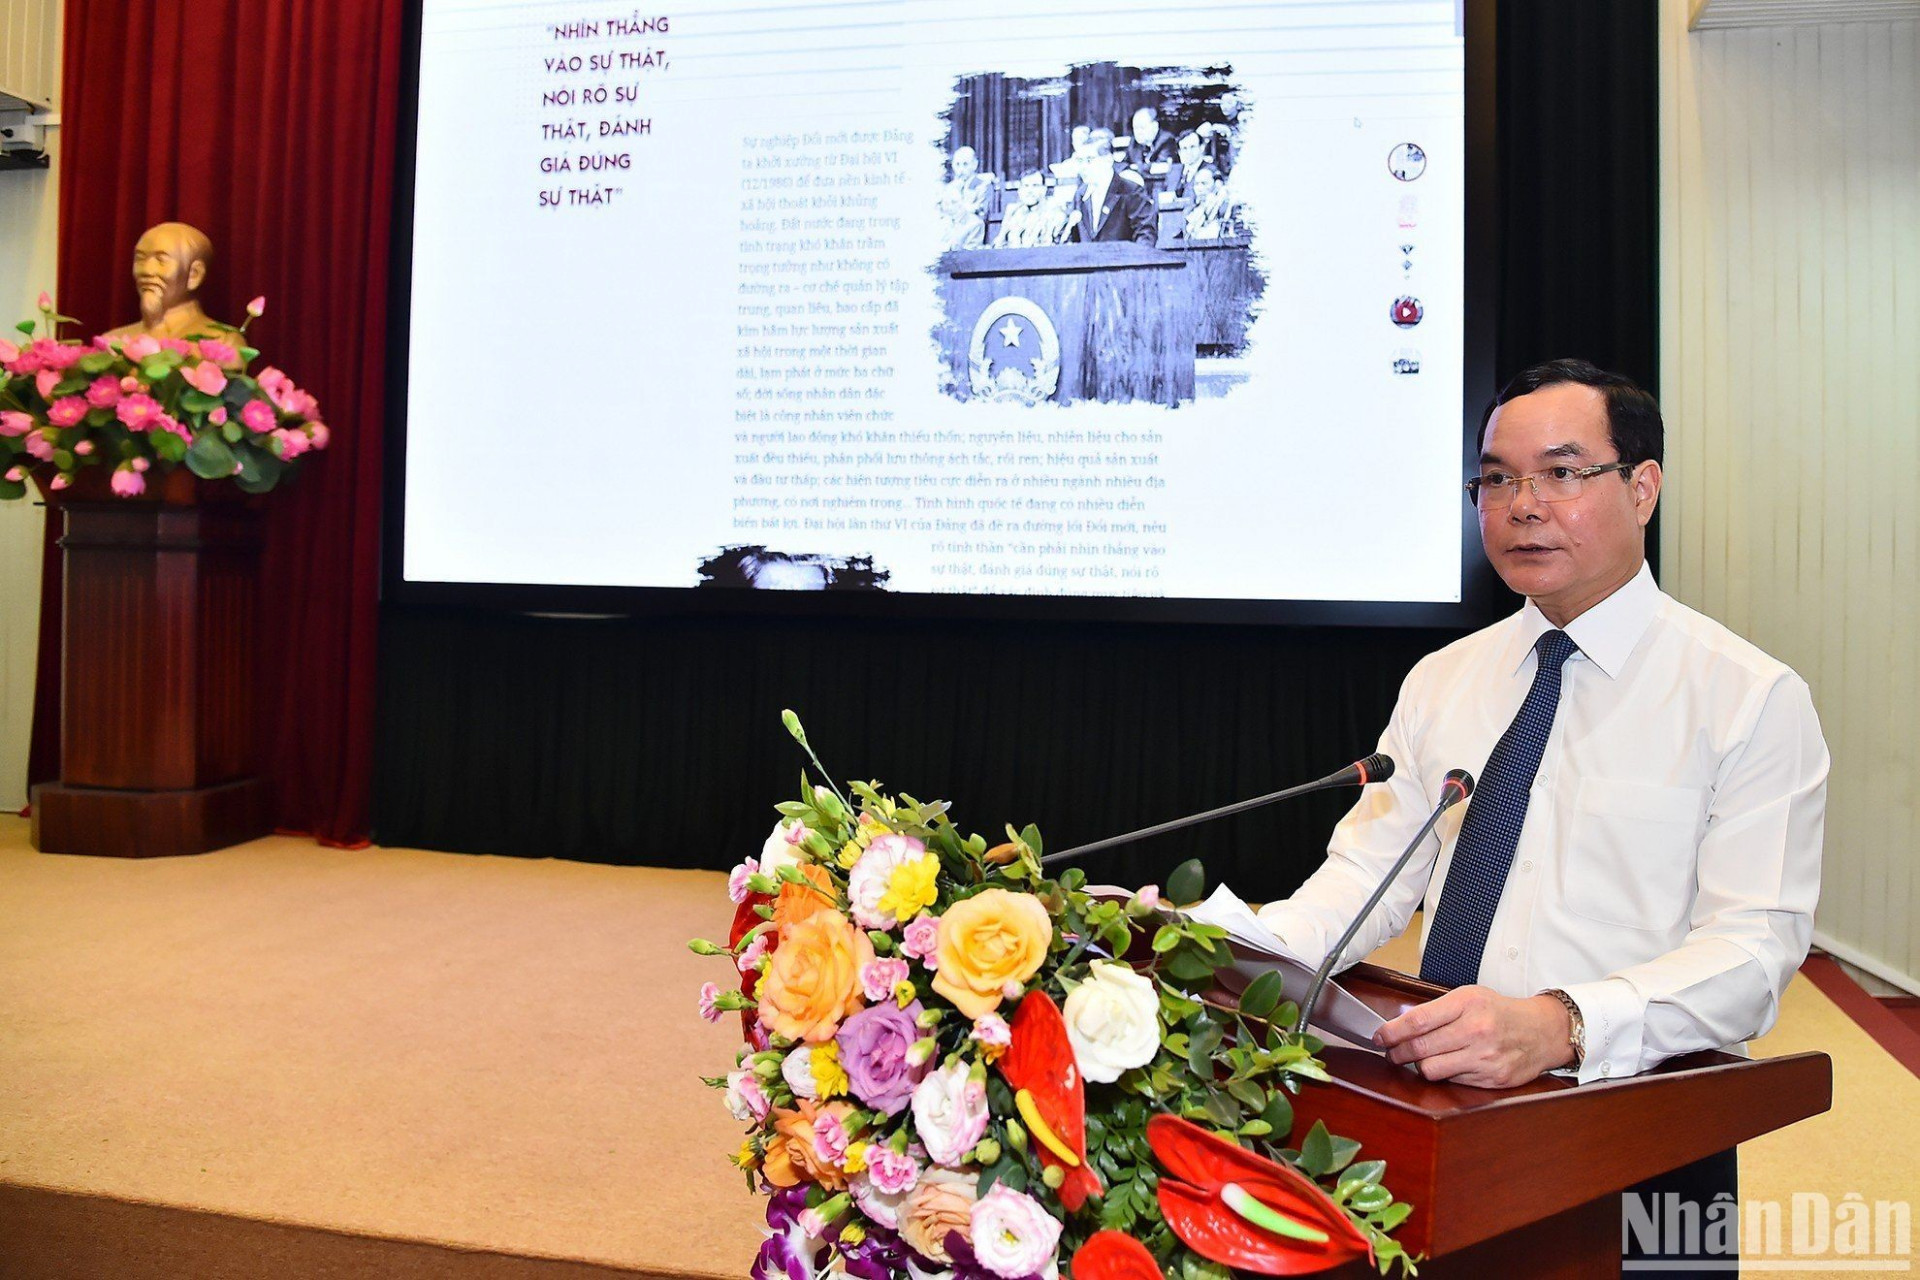 Chủ tịch Tổng Liên đoàn Lao động Việt Nam Nguyễn Đình Khang trình bày tham luận tại tọa đàm. (Ảnh: THỦY NGUYÊN)